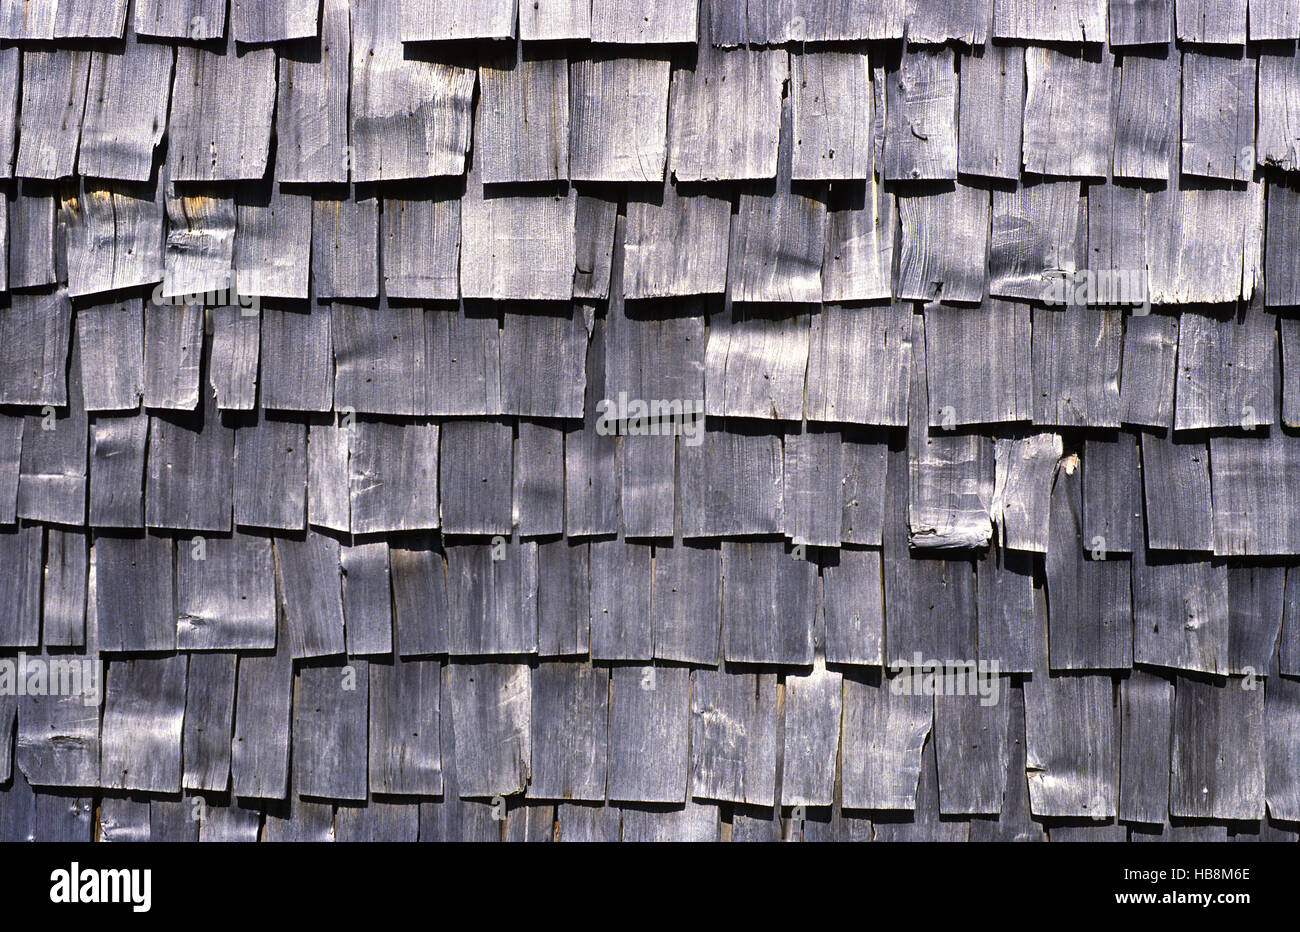 wood shingles, background Stock Photo